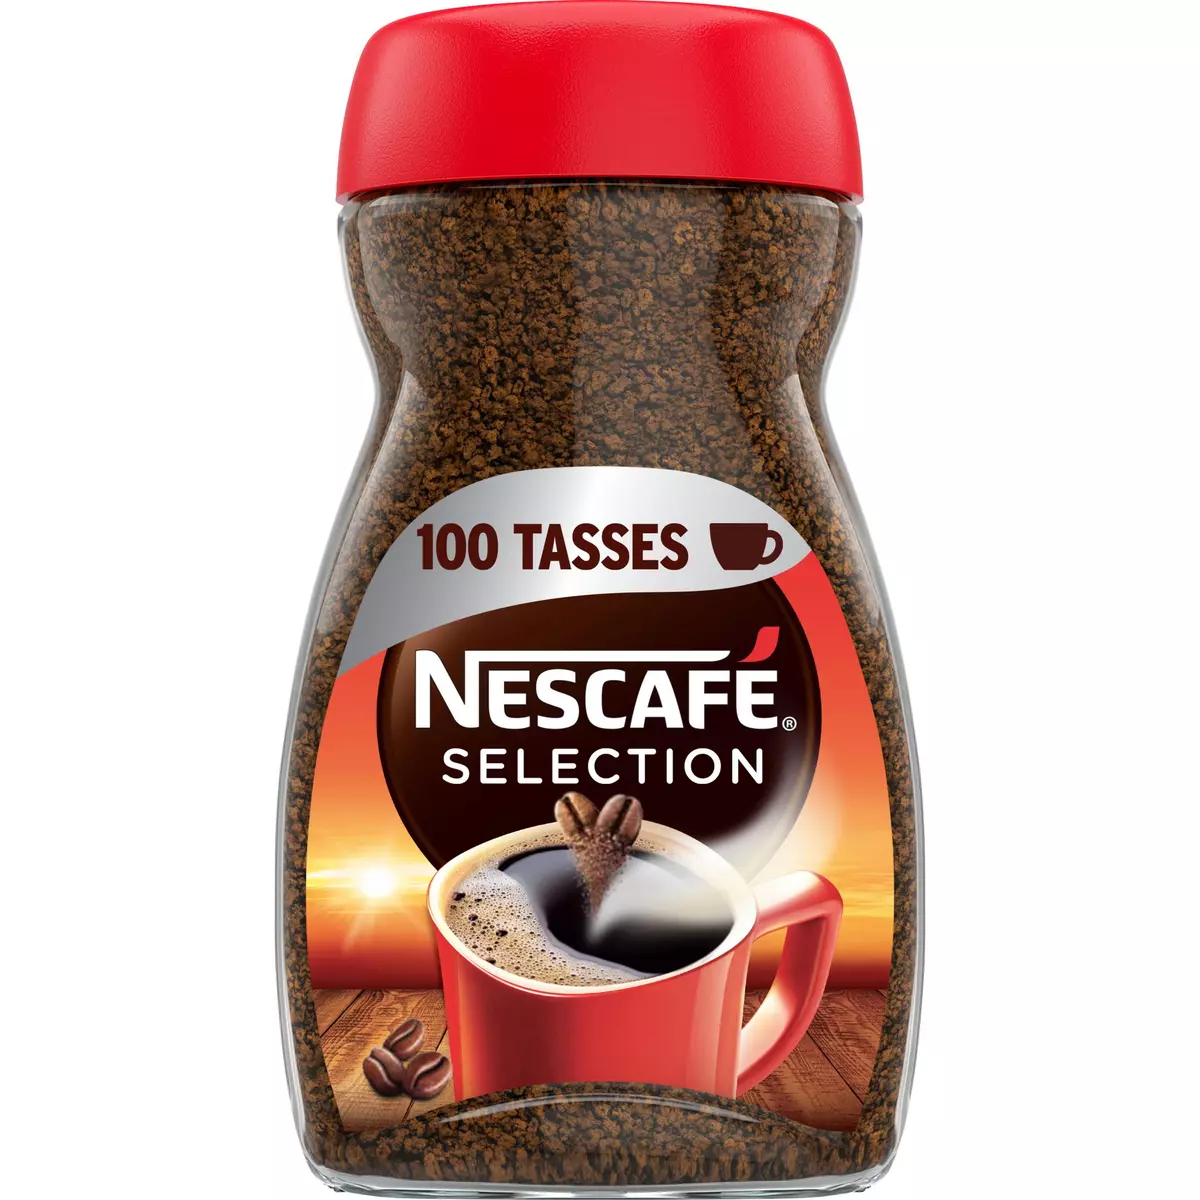 NESCAFE Café soluble sélection corsé et intense 100 tasses 200g